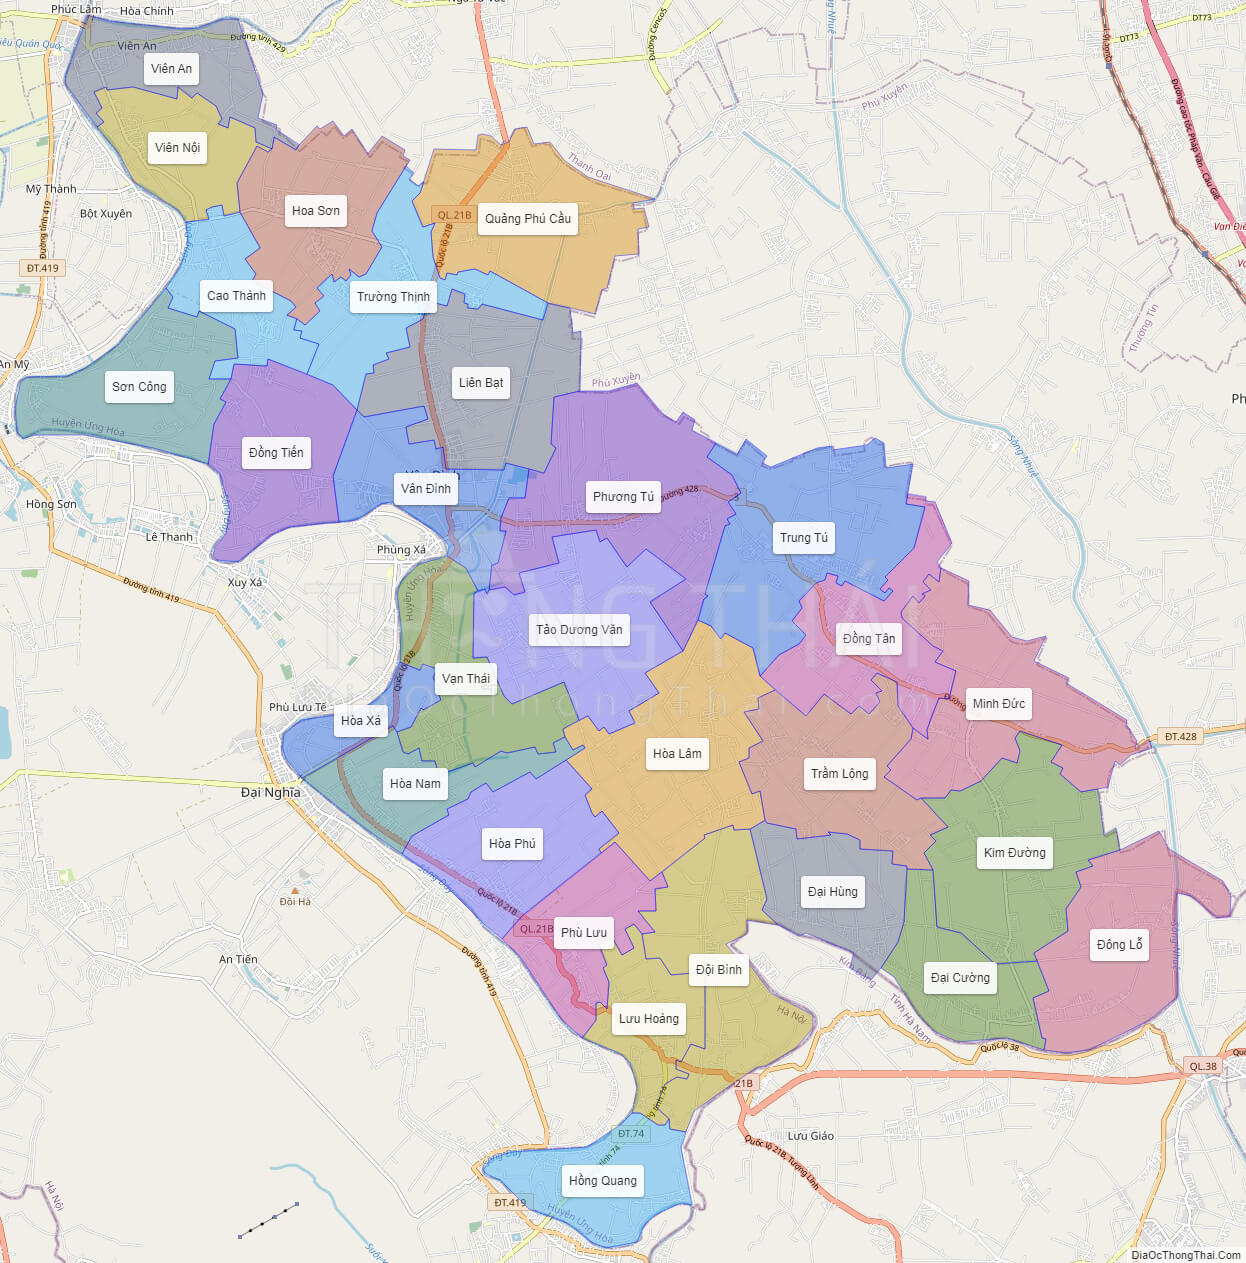 Huyện Ứng Hòa đang trên đà phát triển mạnh mẽ, khiến cho bản đồ huyện Ứng Hòa năm 2024 đầy hứa hẹn. Chỉ cần một cái nhìn qua hình ảnh tương ứng, bạn sẽ được tìm hiểu về địa thế, vị trí cũng như các đặc sản địa phương của huyện này.